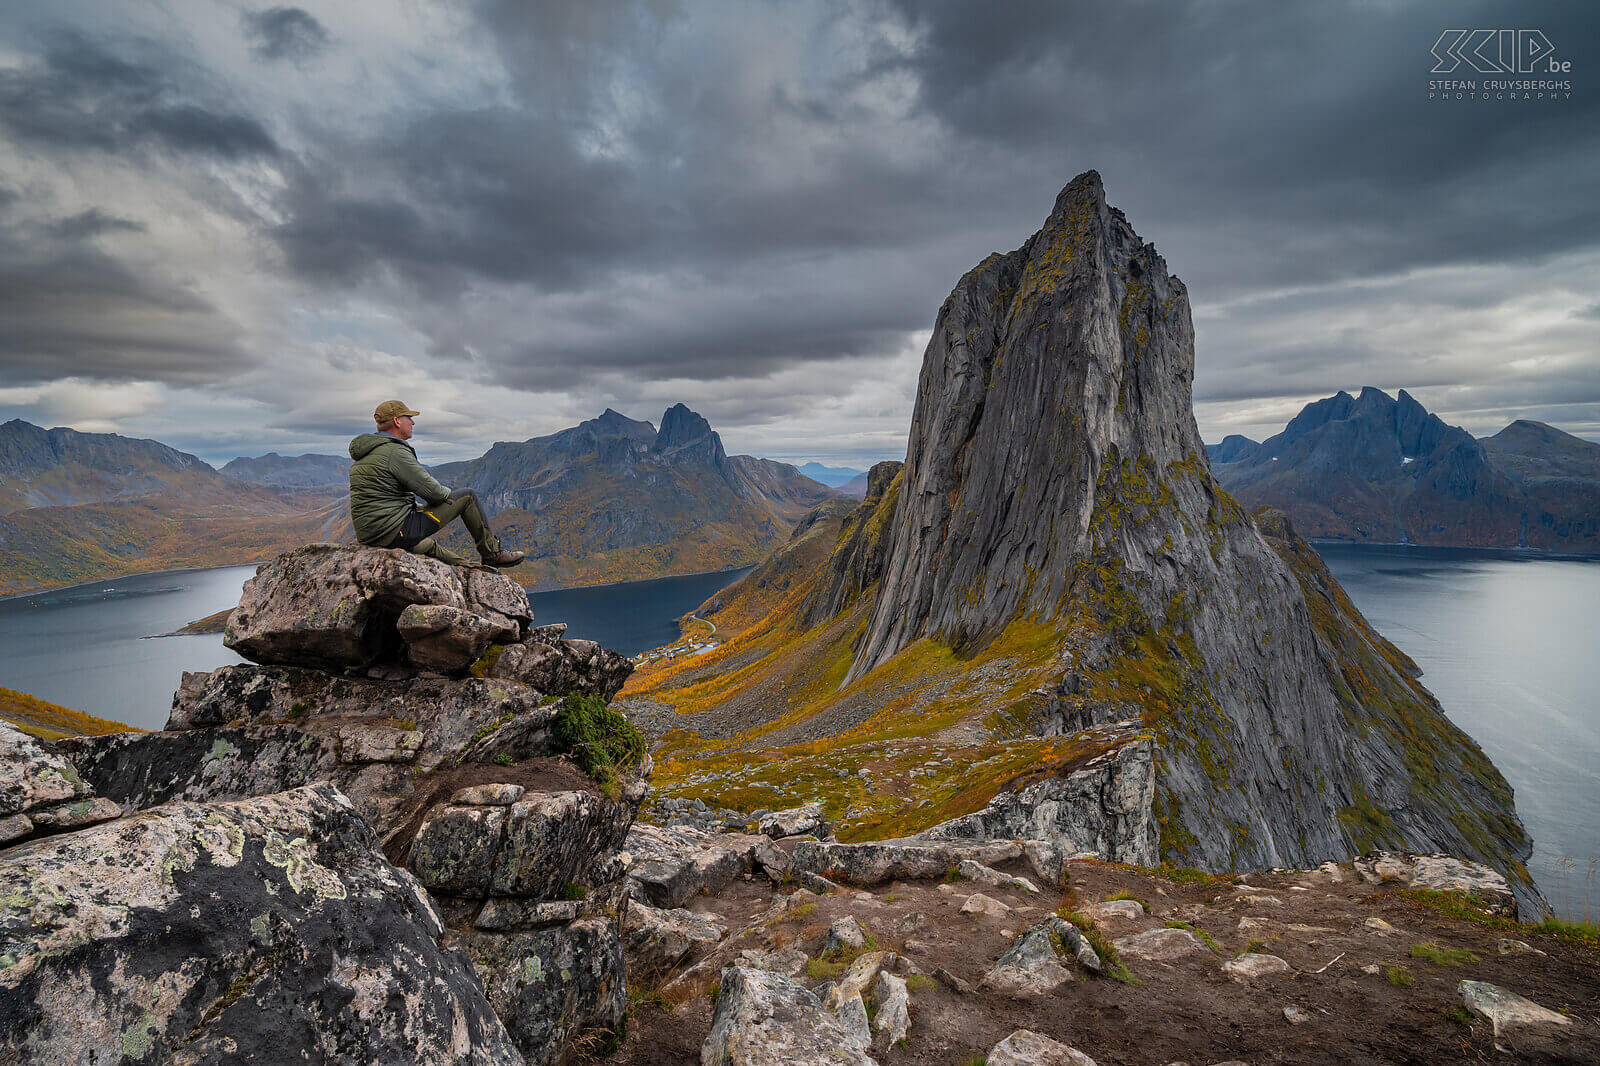 Noorwegen - Senja - Segla - Stefan Selfie op de Hesten berg met zicht op de beroemde Segla rotspiek en de omliggende fjorden Stefan Cruysberghs